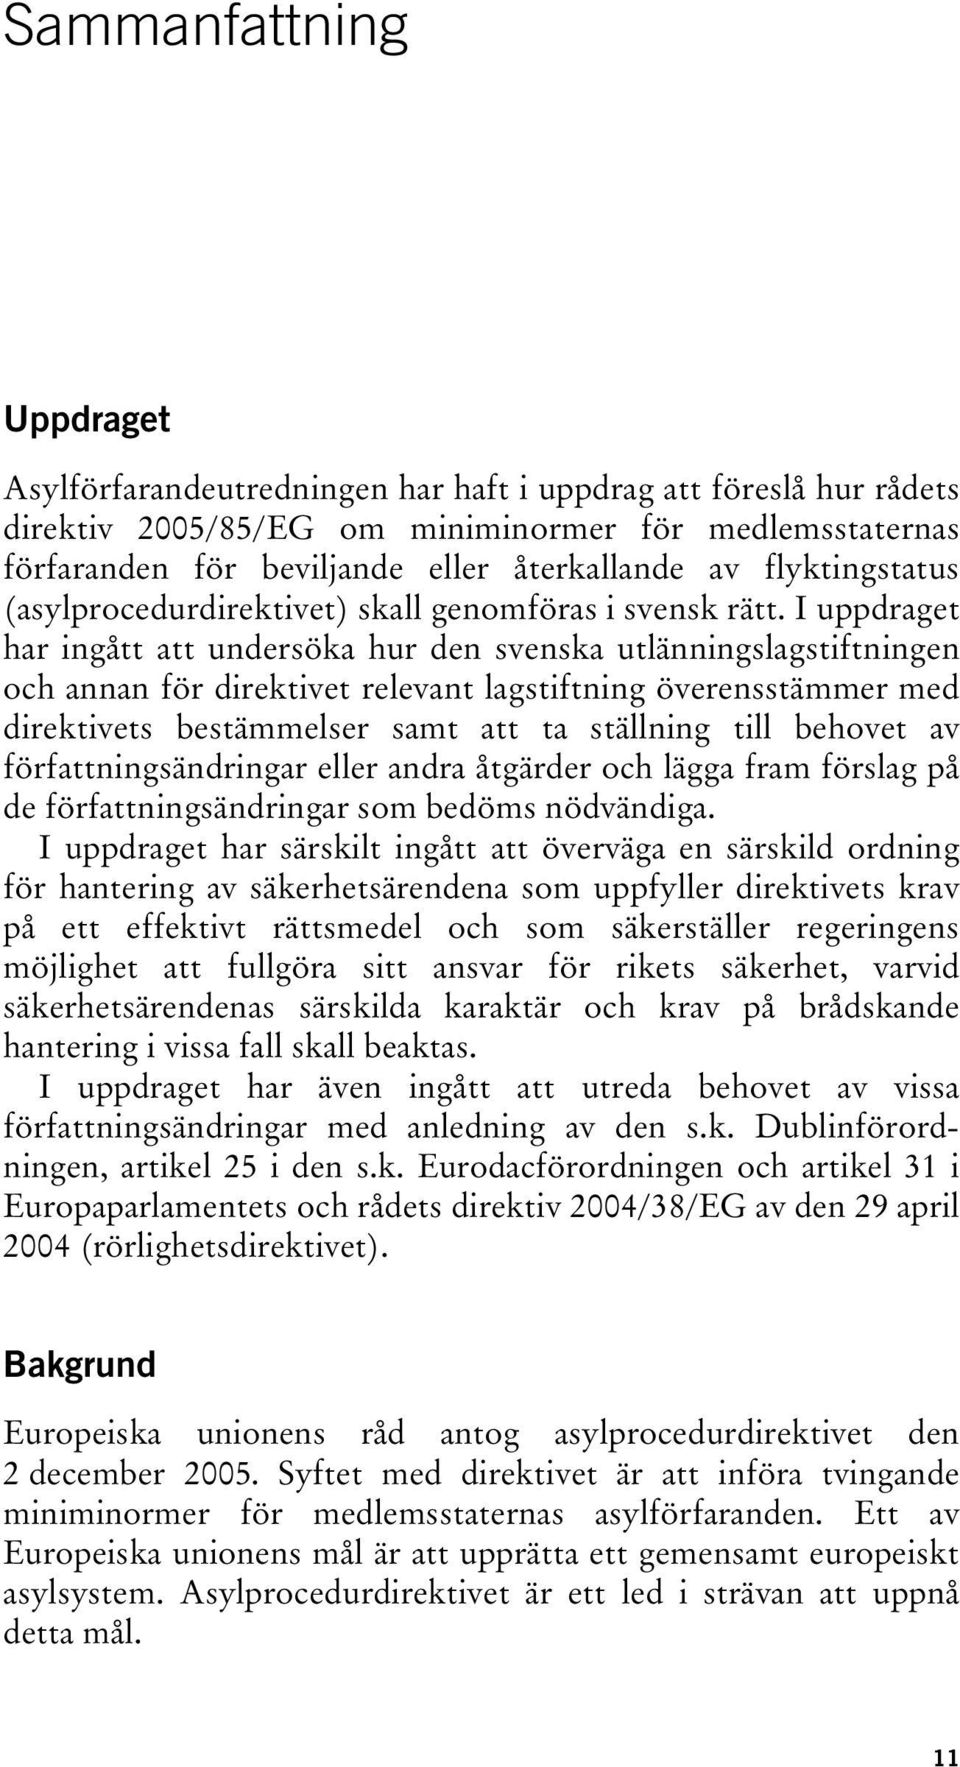 I uppdraget har ingått att undersöka hur den svenska utlänningslagstiftningen och annan för direktivet relevant lagstiftning överensstämmer med direktivets bestämmelser samt att ta ställning till